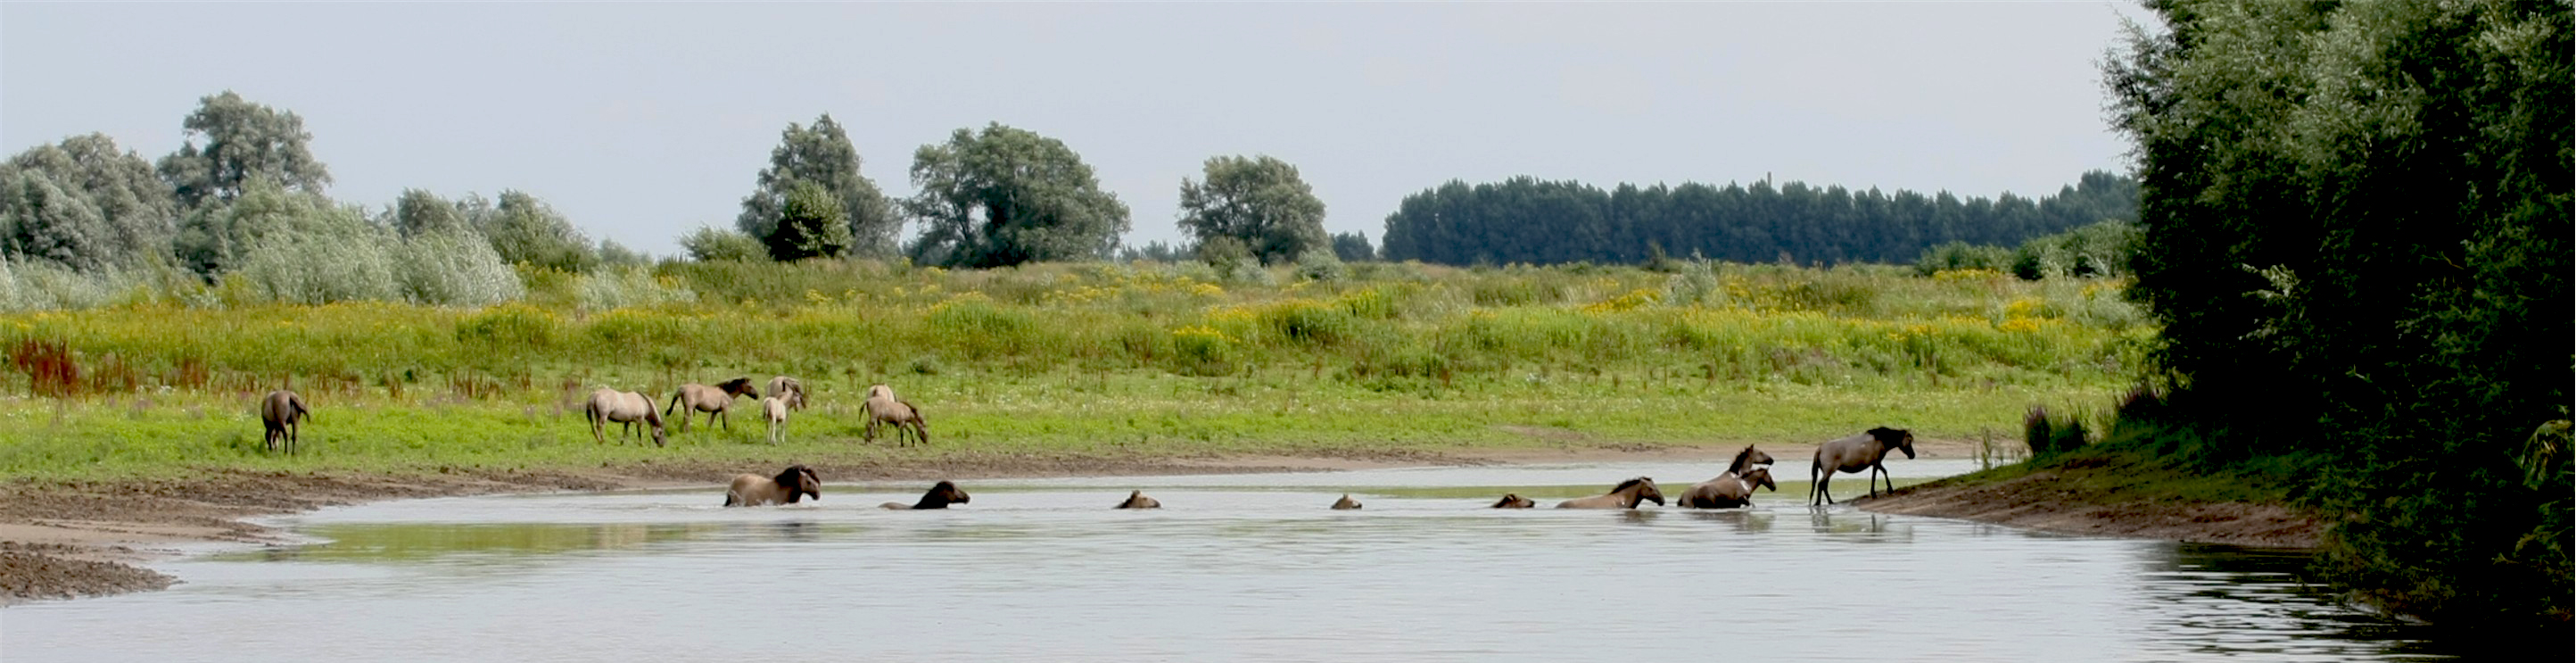 Konikpaarde, foto: Nick van den Broek